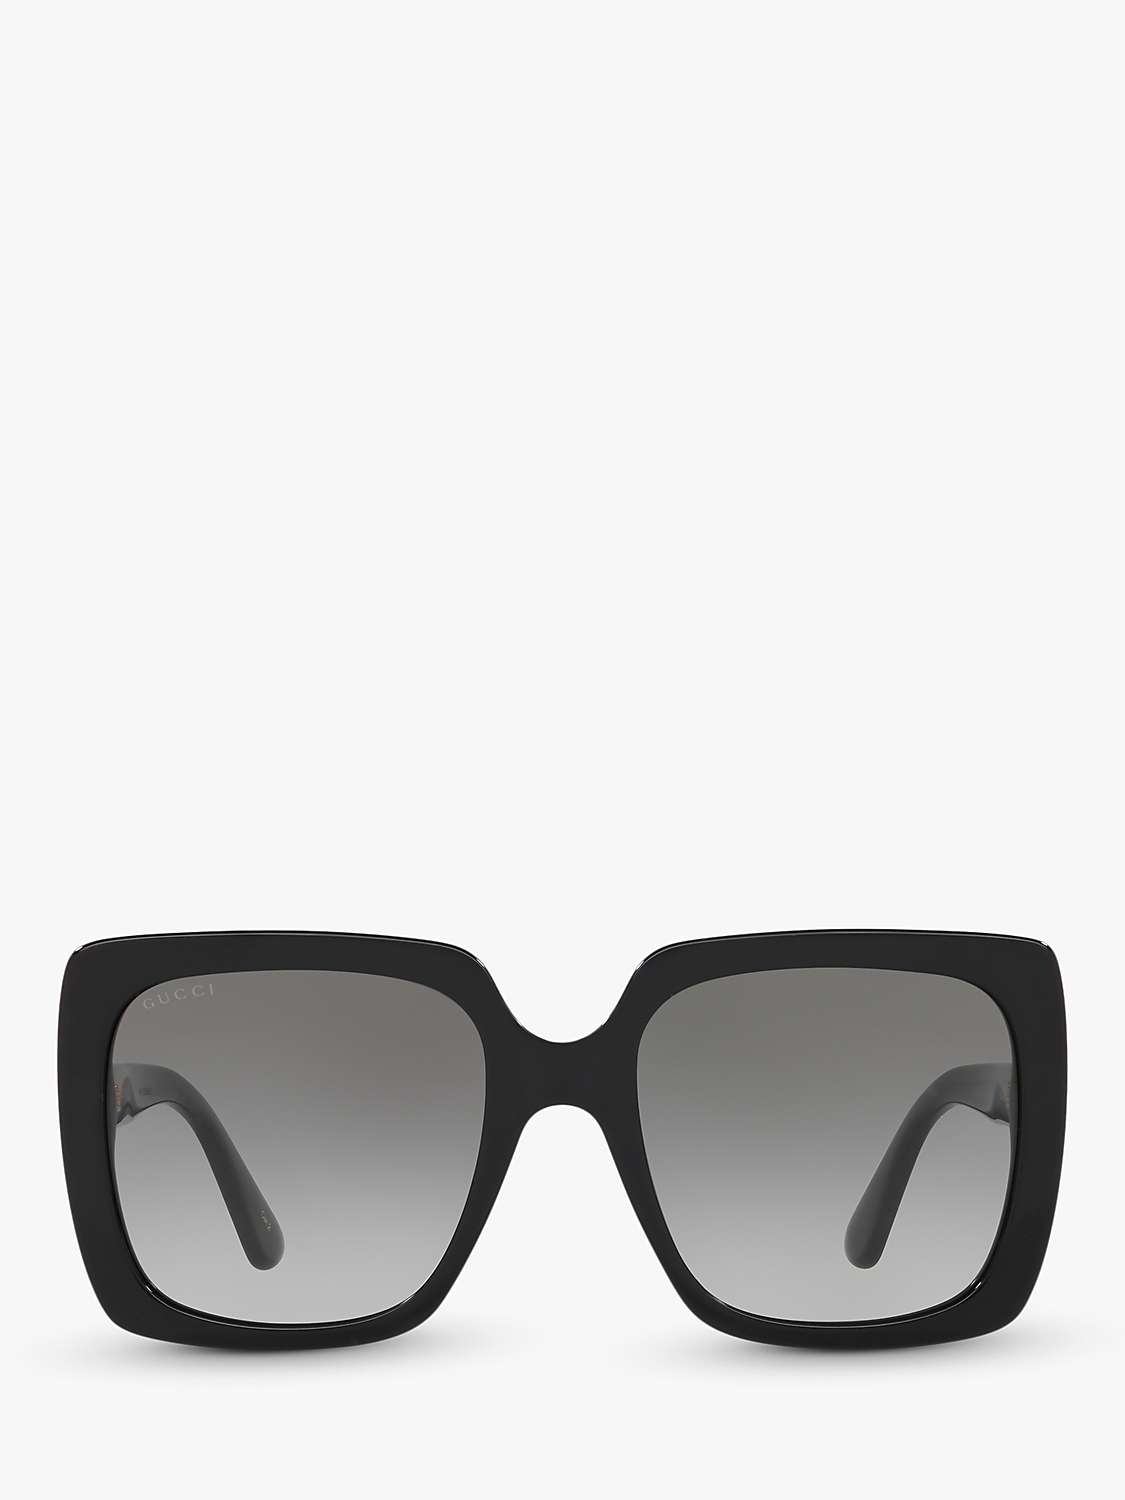 Gucci GG0418S Women's Square Sunglasses, Black/Grey Gradient at John ...